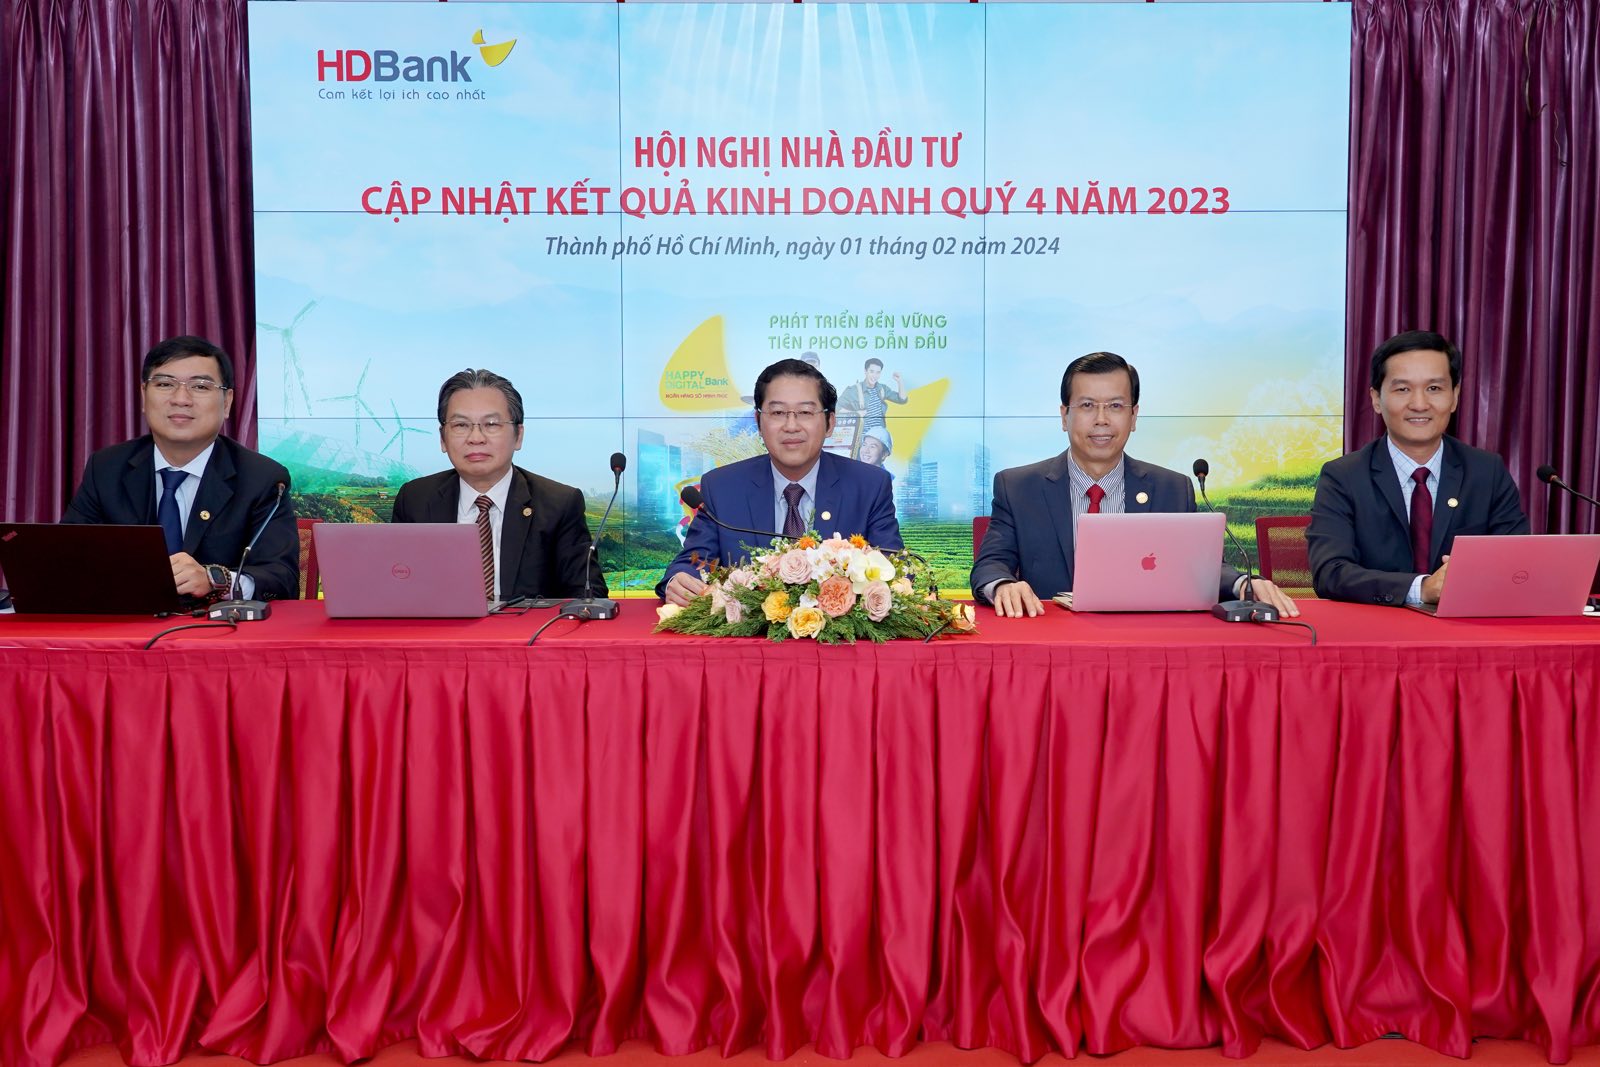 Hội nghị nhà đầu tư HDBank: tiếp tục định hướng tăng trưởng cao, bền vững- Ảnh 1.